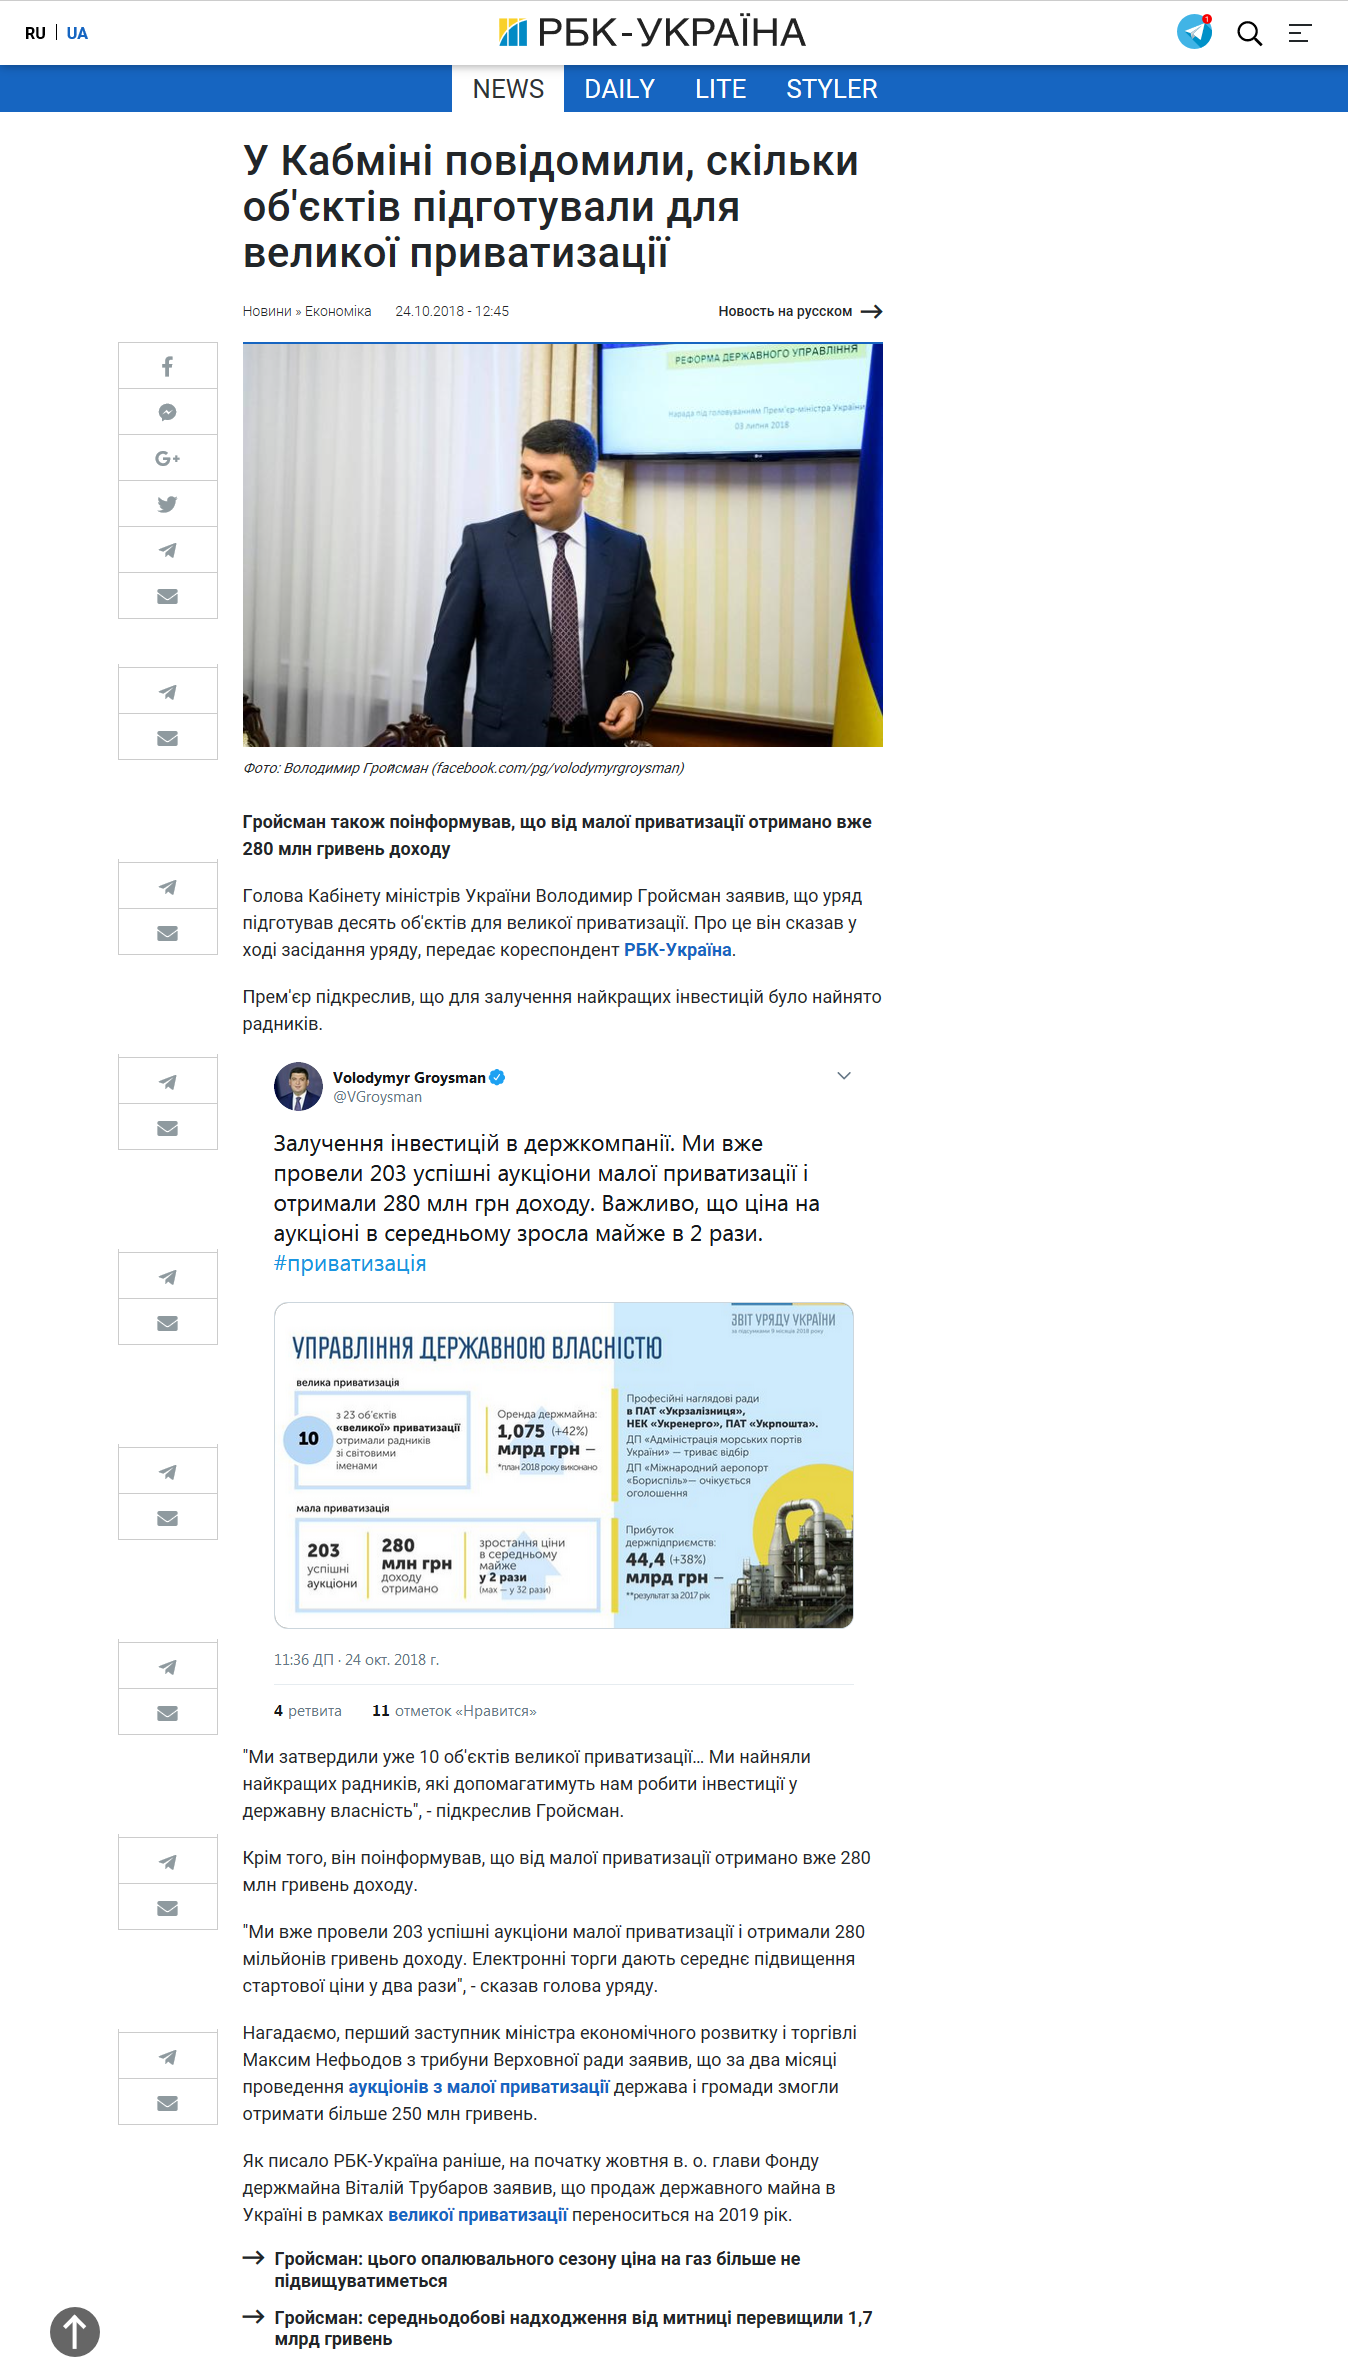 https://www.rbc.ua/ukr/news/kabmine-rasskazali-skolko-obektov-podgotovili-1540374255.html